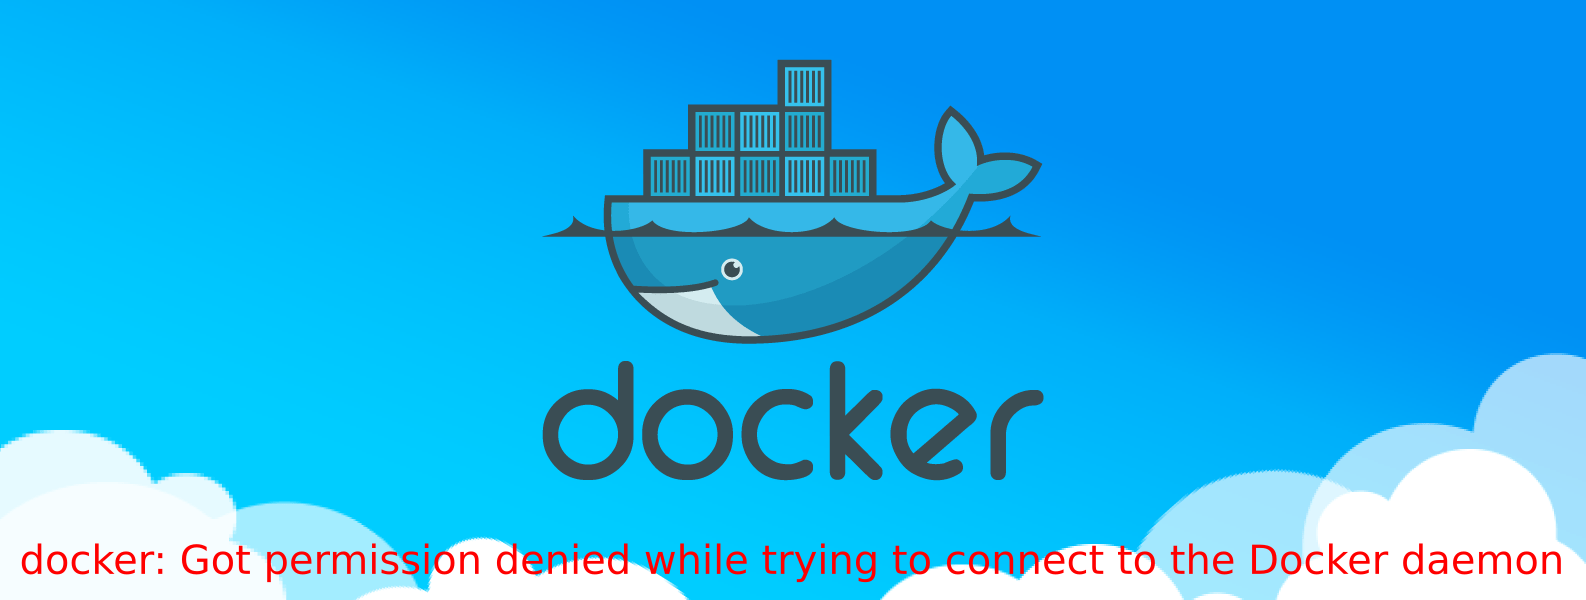 Resolvendo permissão negada ao tentar conectar ao soquete do Docker